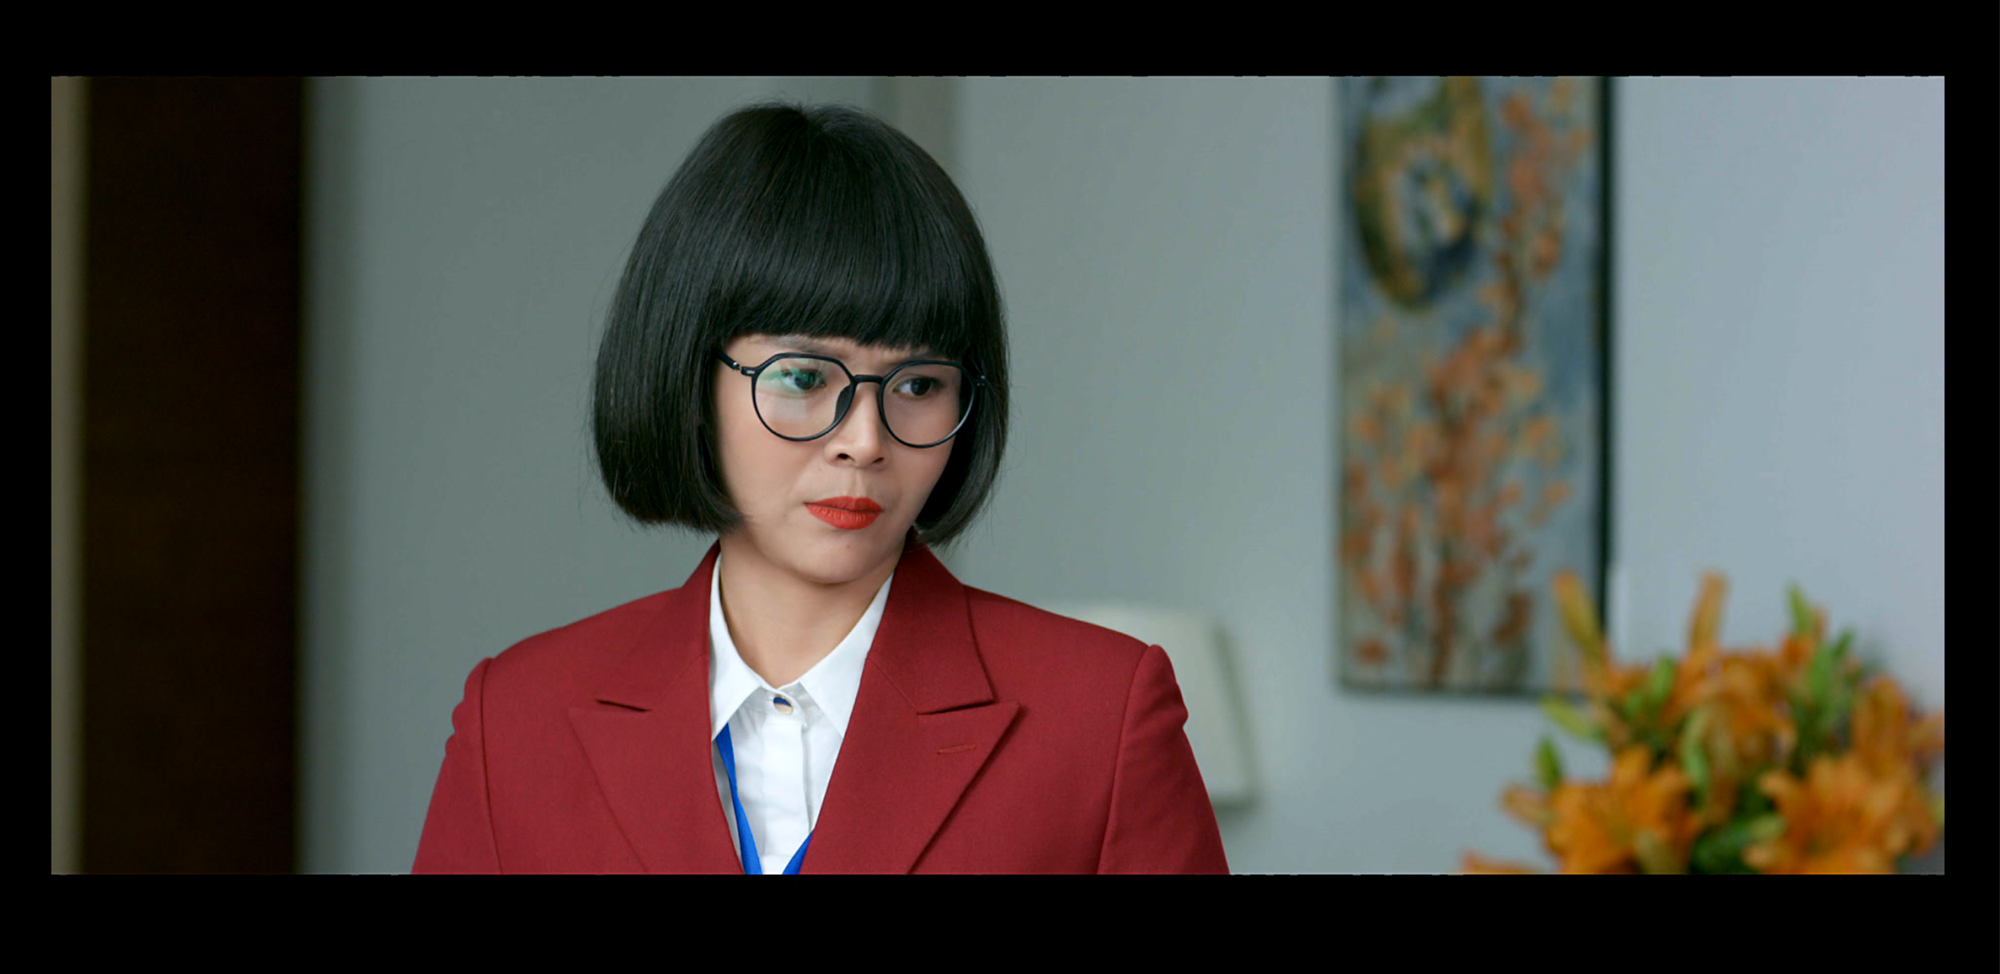 Diễm Hương đảm nhận vai diễn Trưởng phòng Hường trong “Tình yêu và tham vọng”